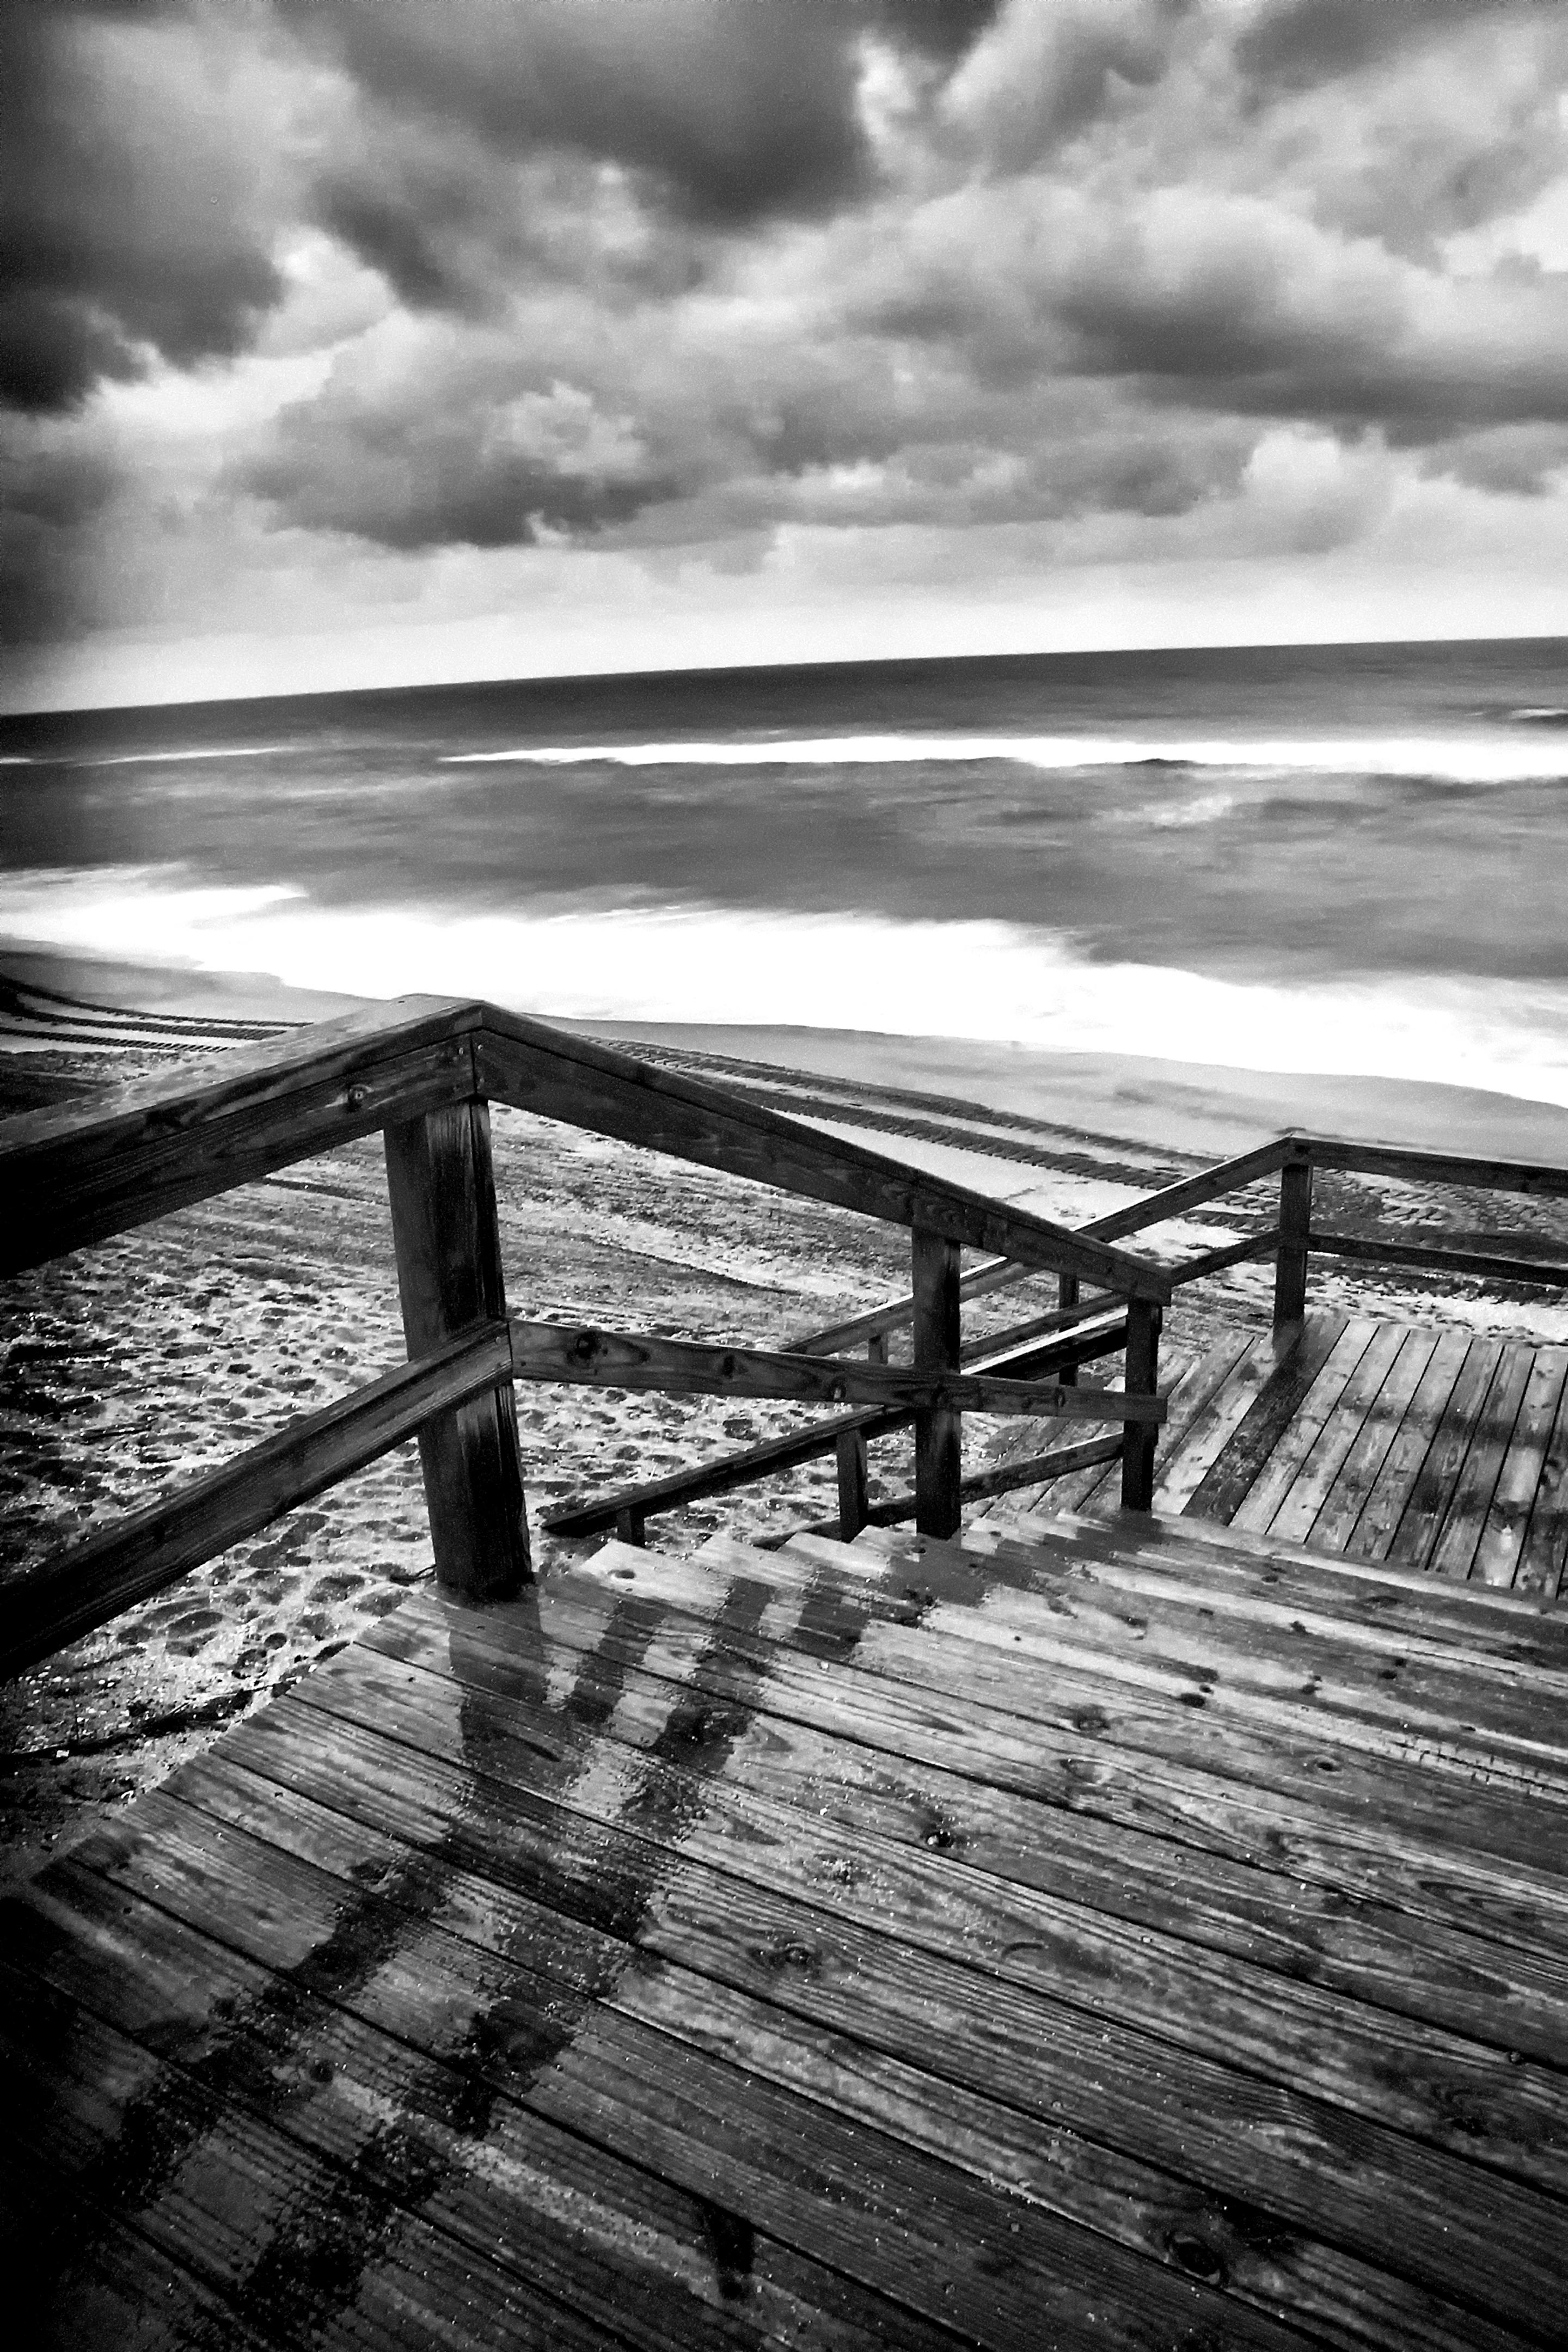 Marc Garrison Black and White Photograph - Beach At Dawn, Black and White Landscape Photography, 2021